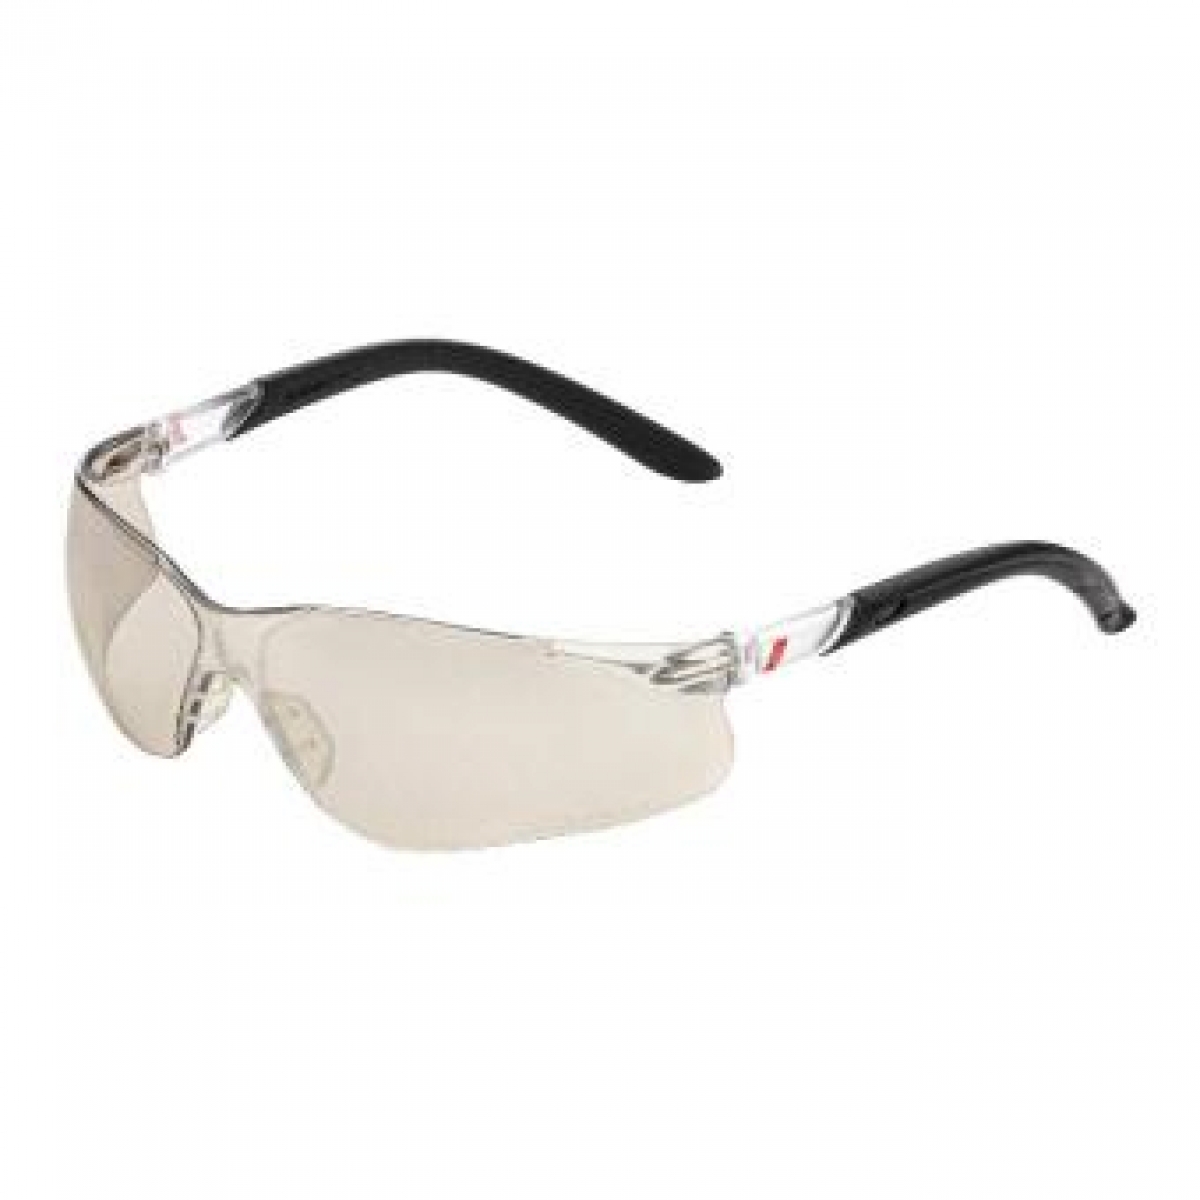 NITRAS VISION PROTECT, Schutzbrille, Tragkrper schwarz / transparent, Sichtscheiben hell, silber verspiegelt,  EN 166